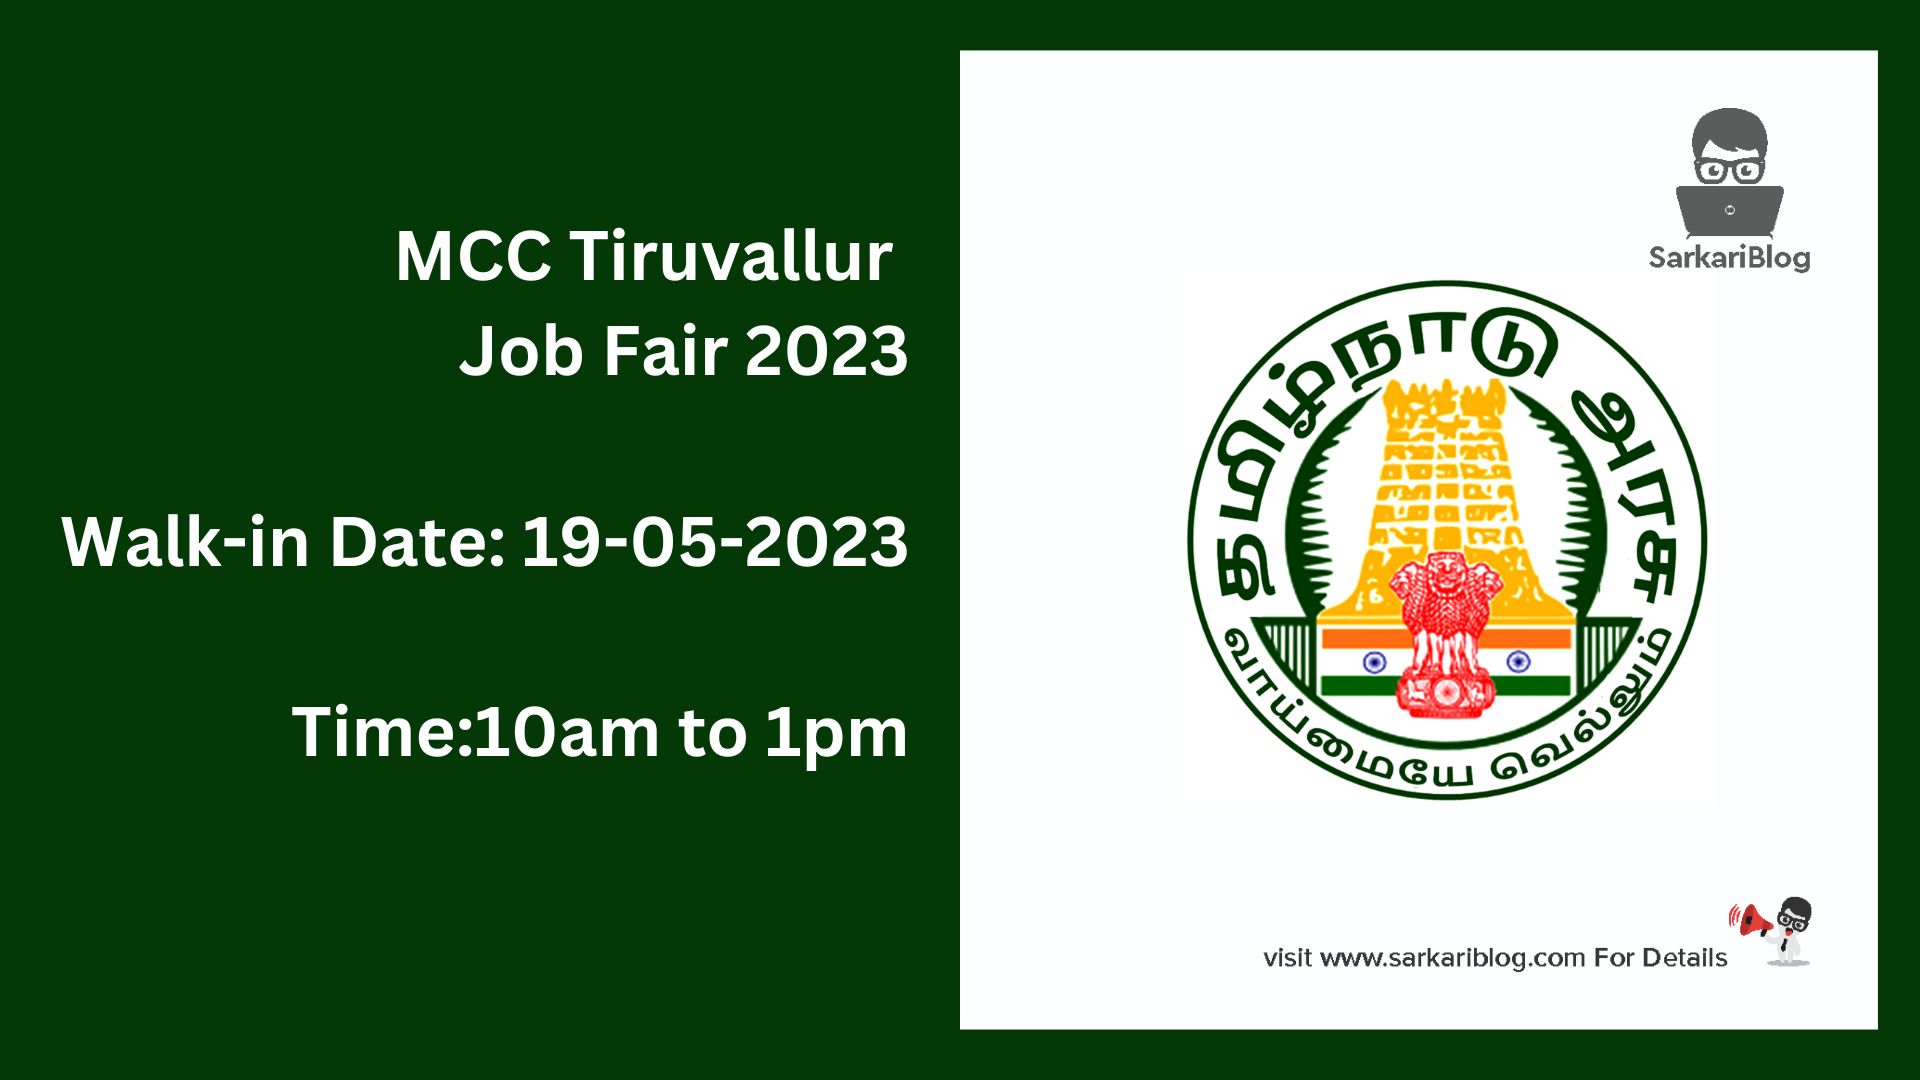 MCC Tiruvallur Job Fair 2023